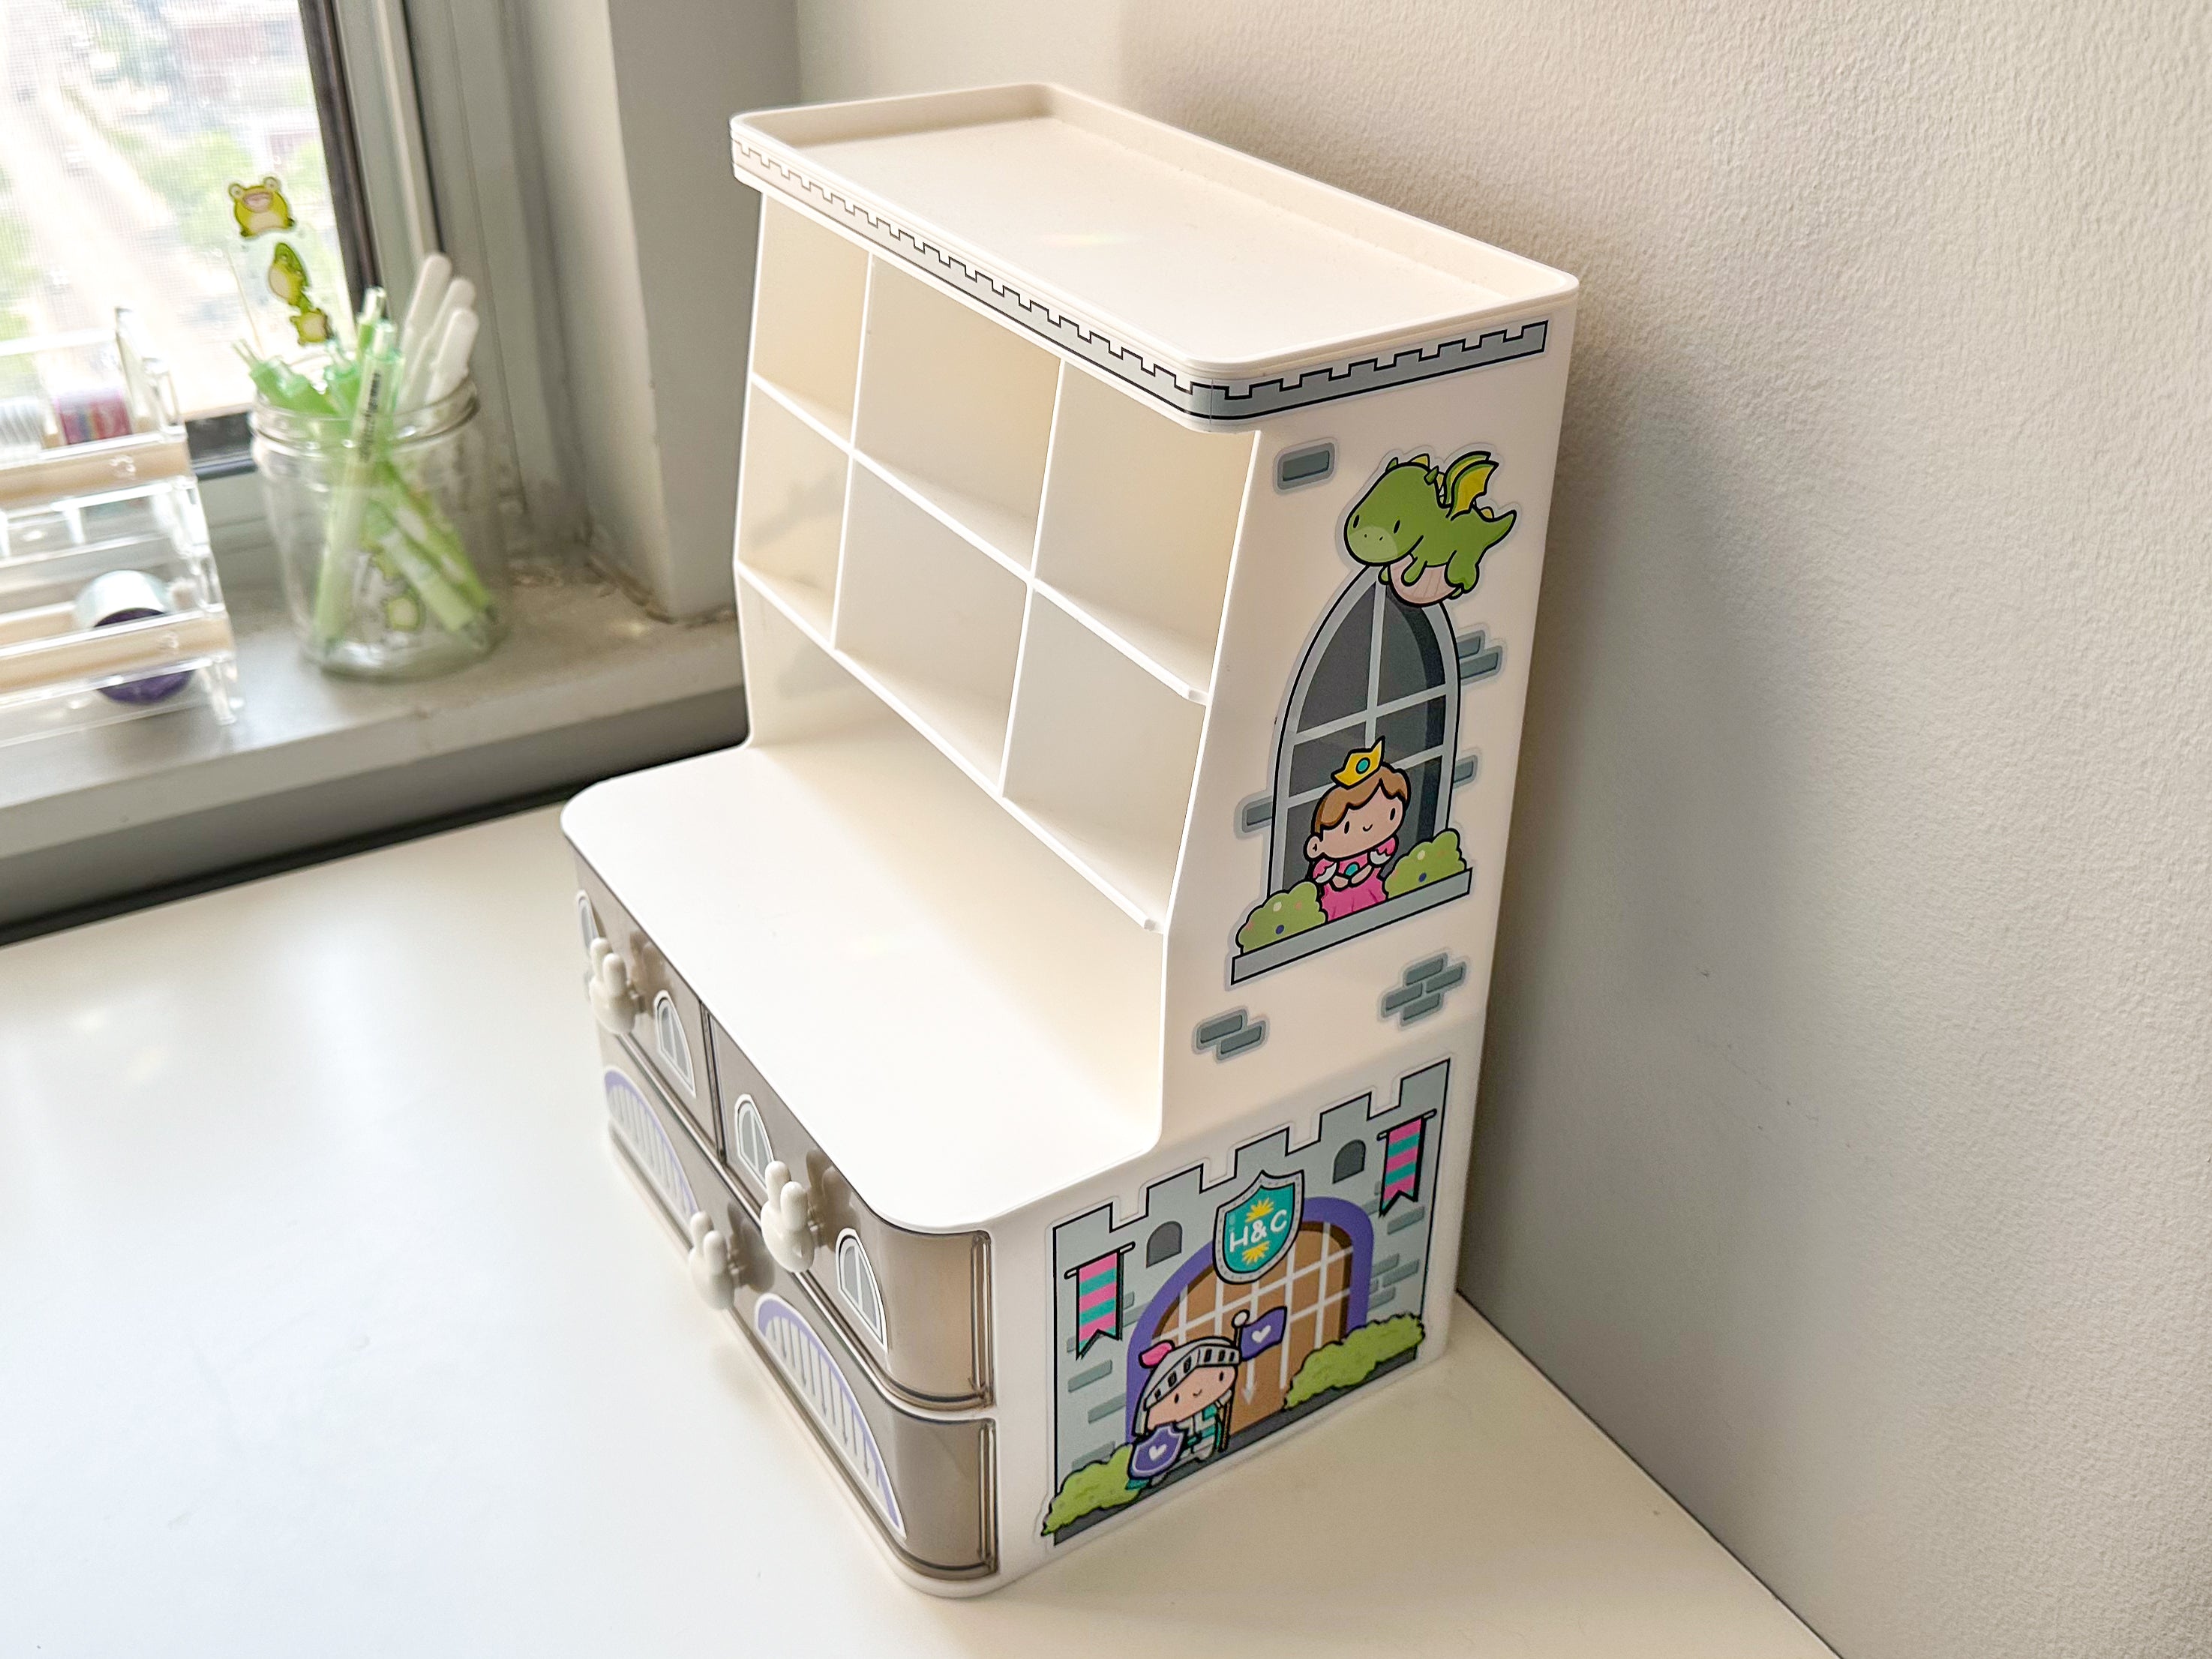 Kids Craft Week: DIY Desk Organizer - Design Improvised